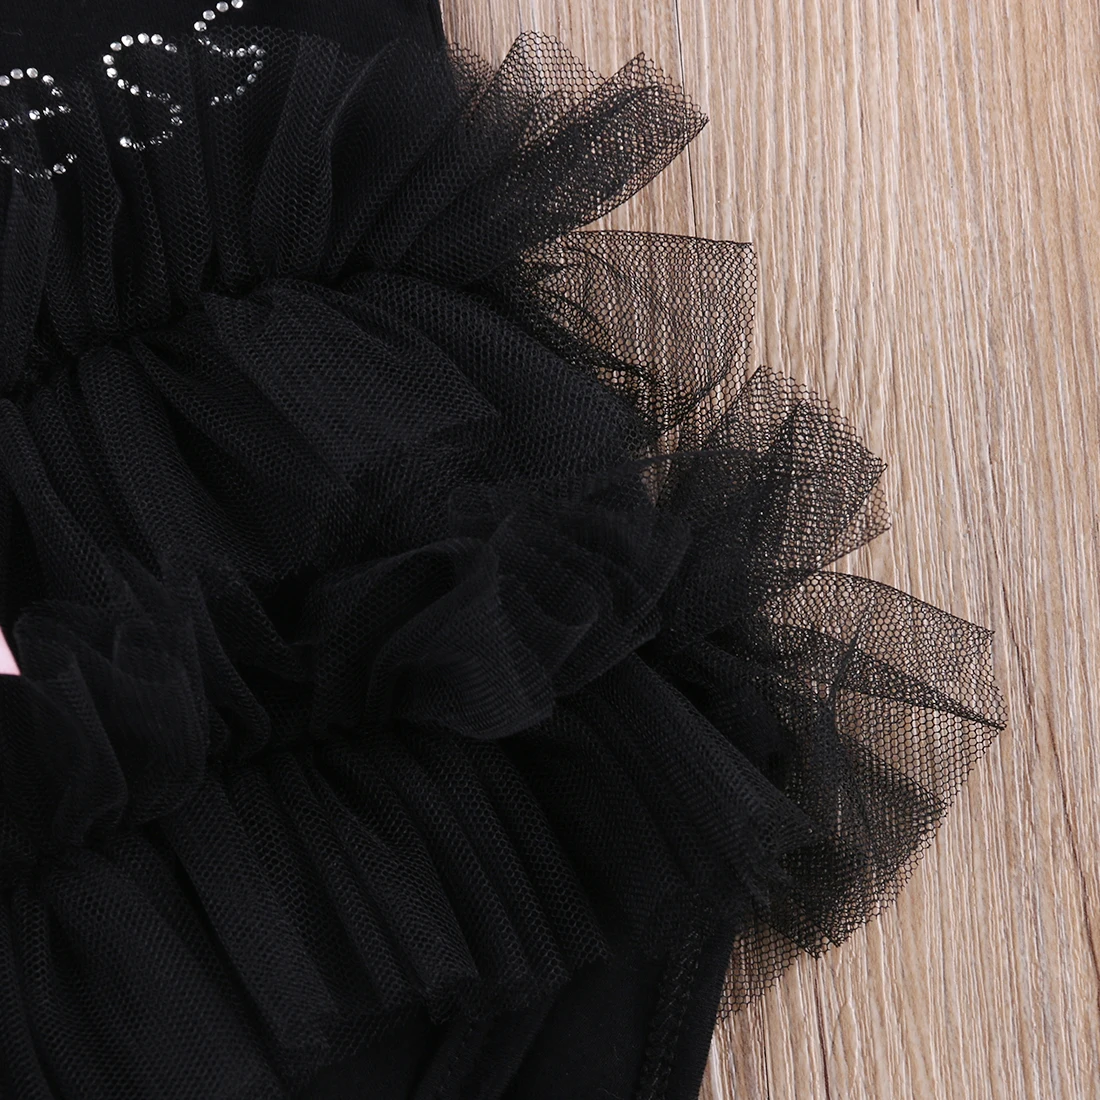 Детское черное платье с вышивкой «My Little» для маленьких девочек, комбинезон, комбинезон для детей 0-18 месяцев